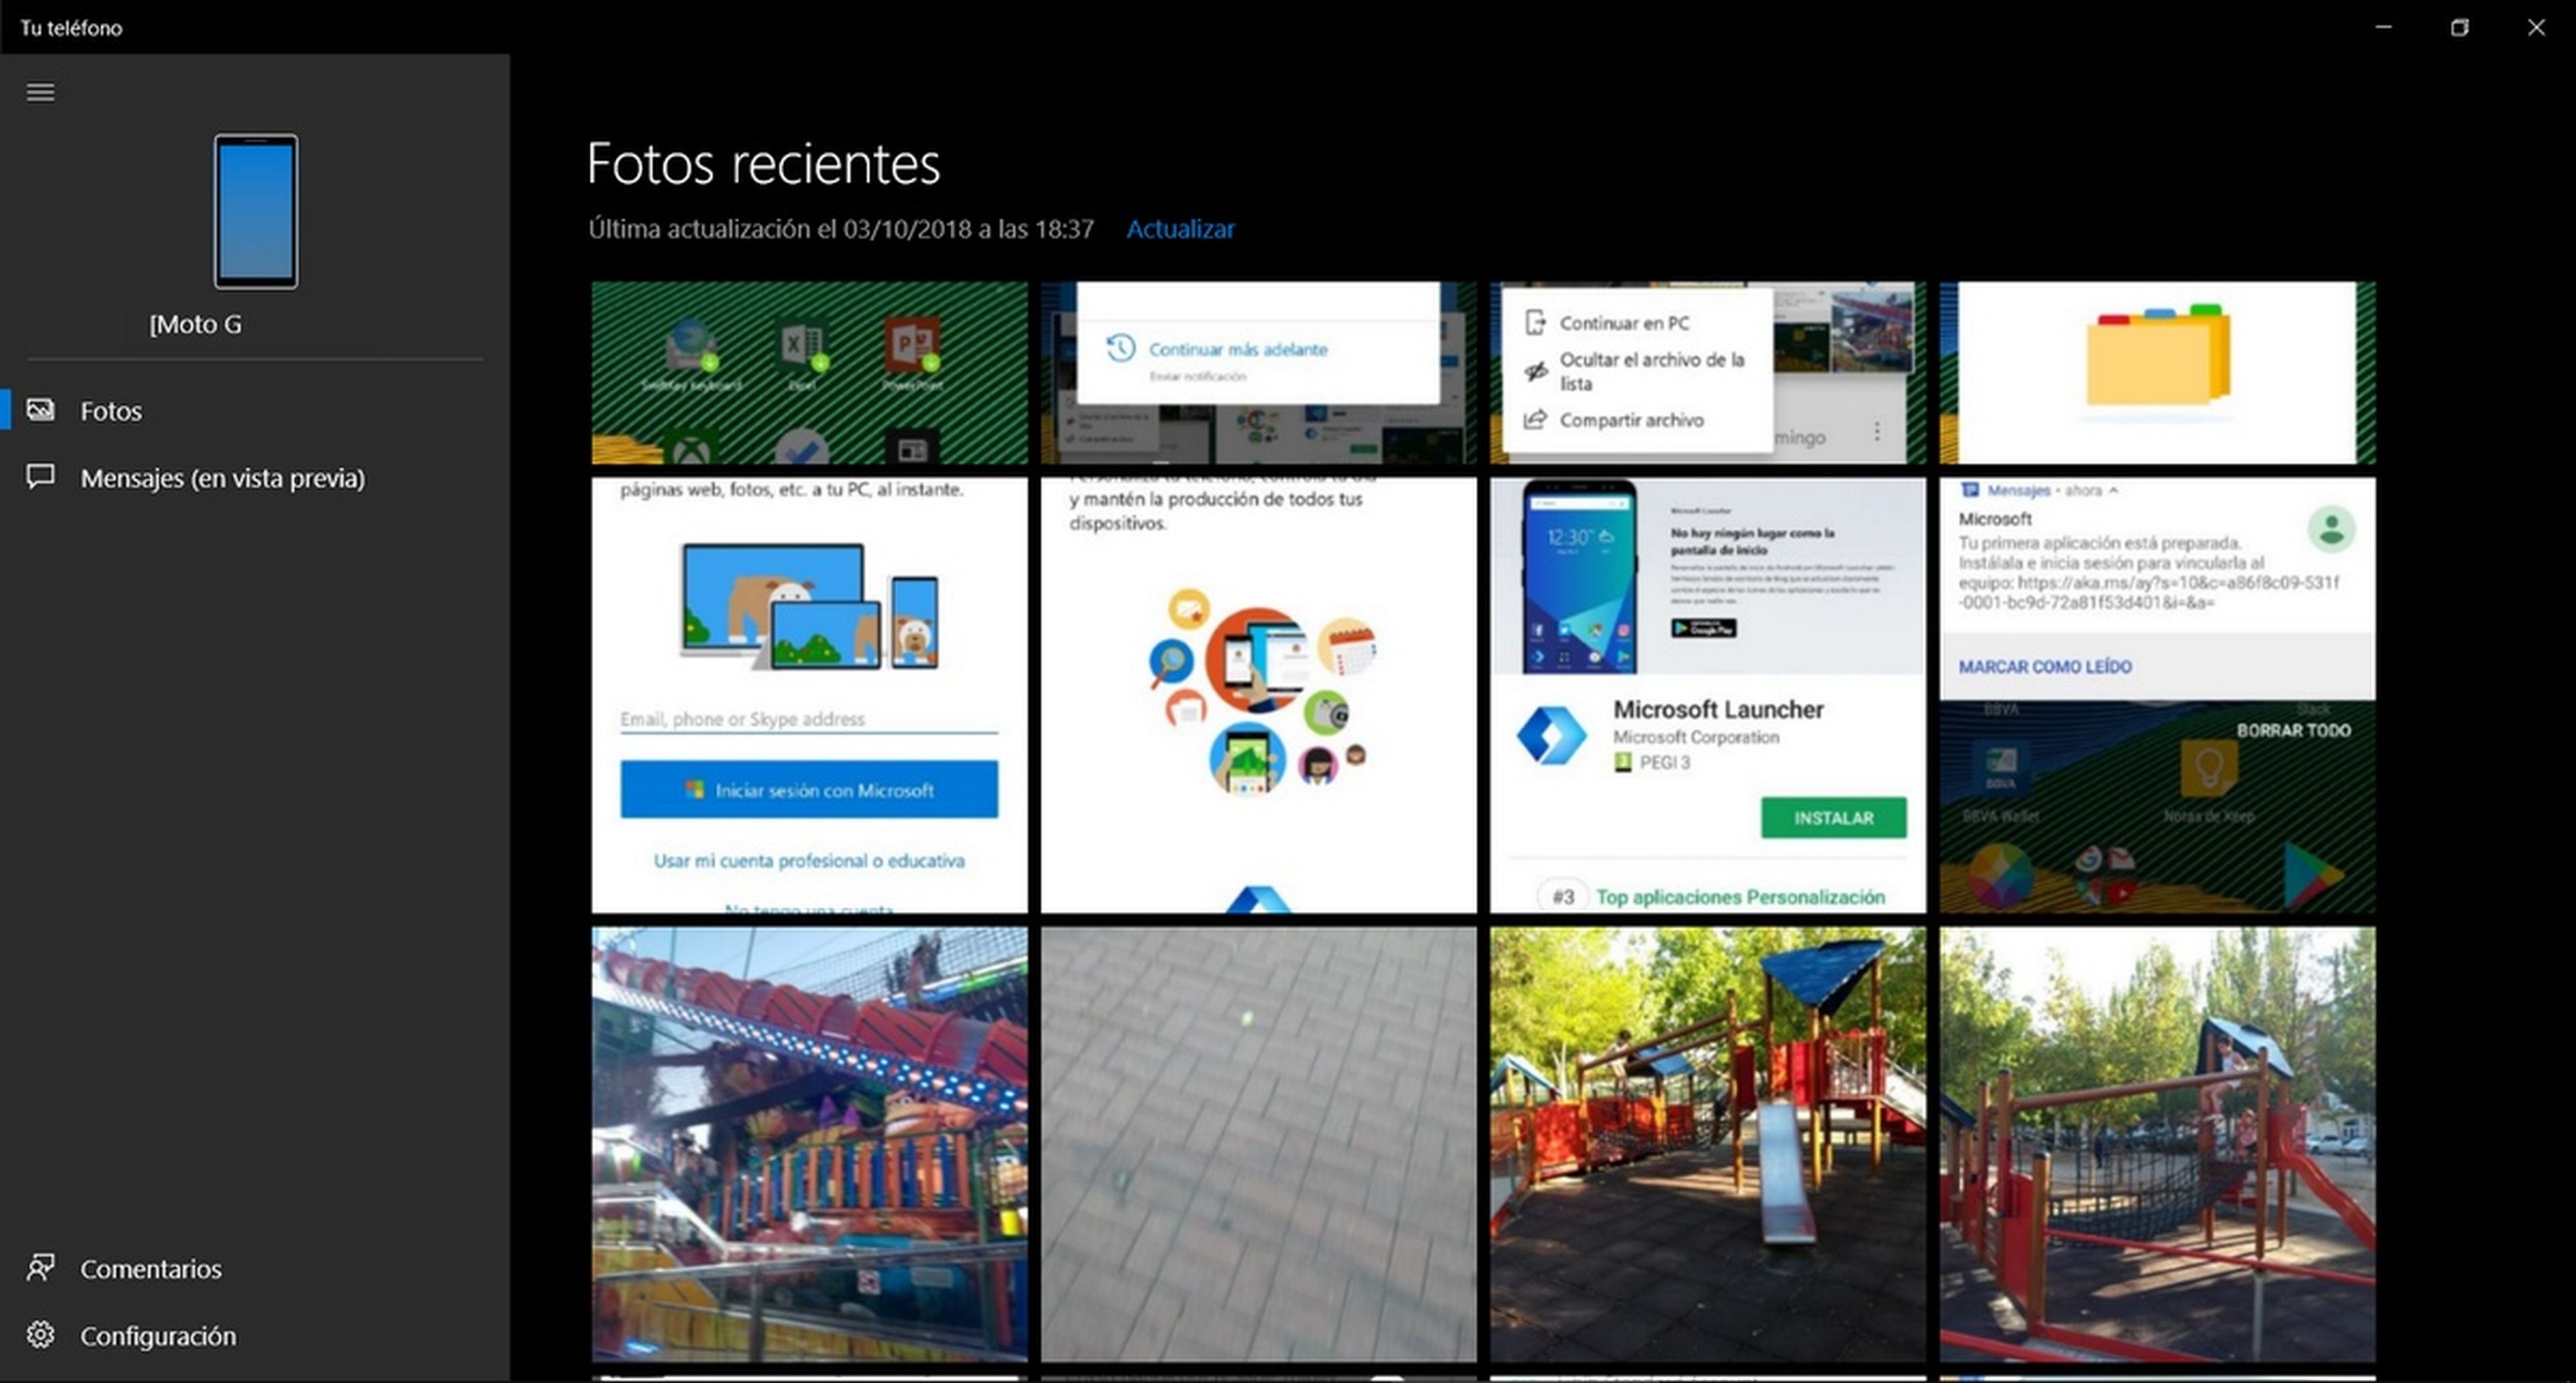 Cómo conectar tu móvil al PC y enviar fotos y mensajes con la app Tu Teléfono de Microsoft